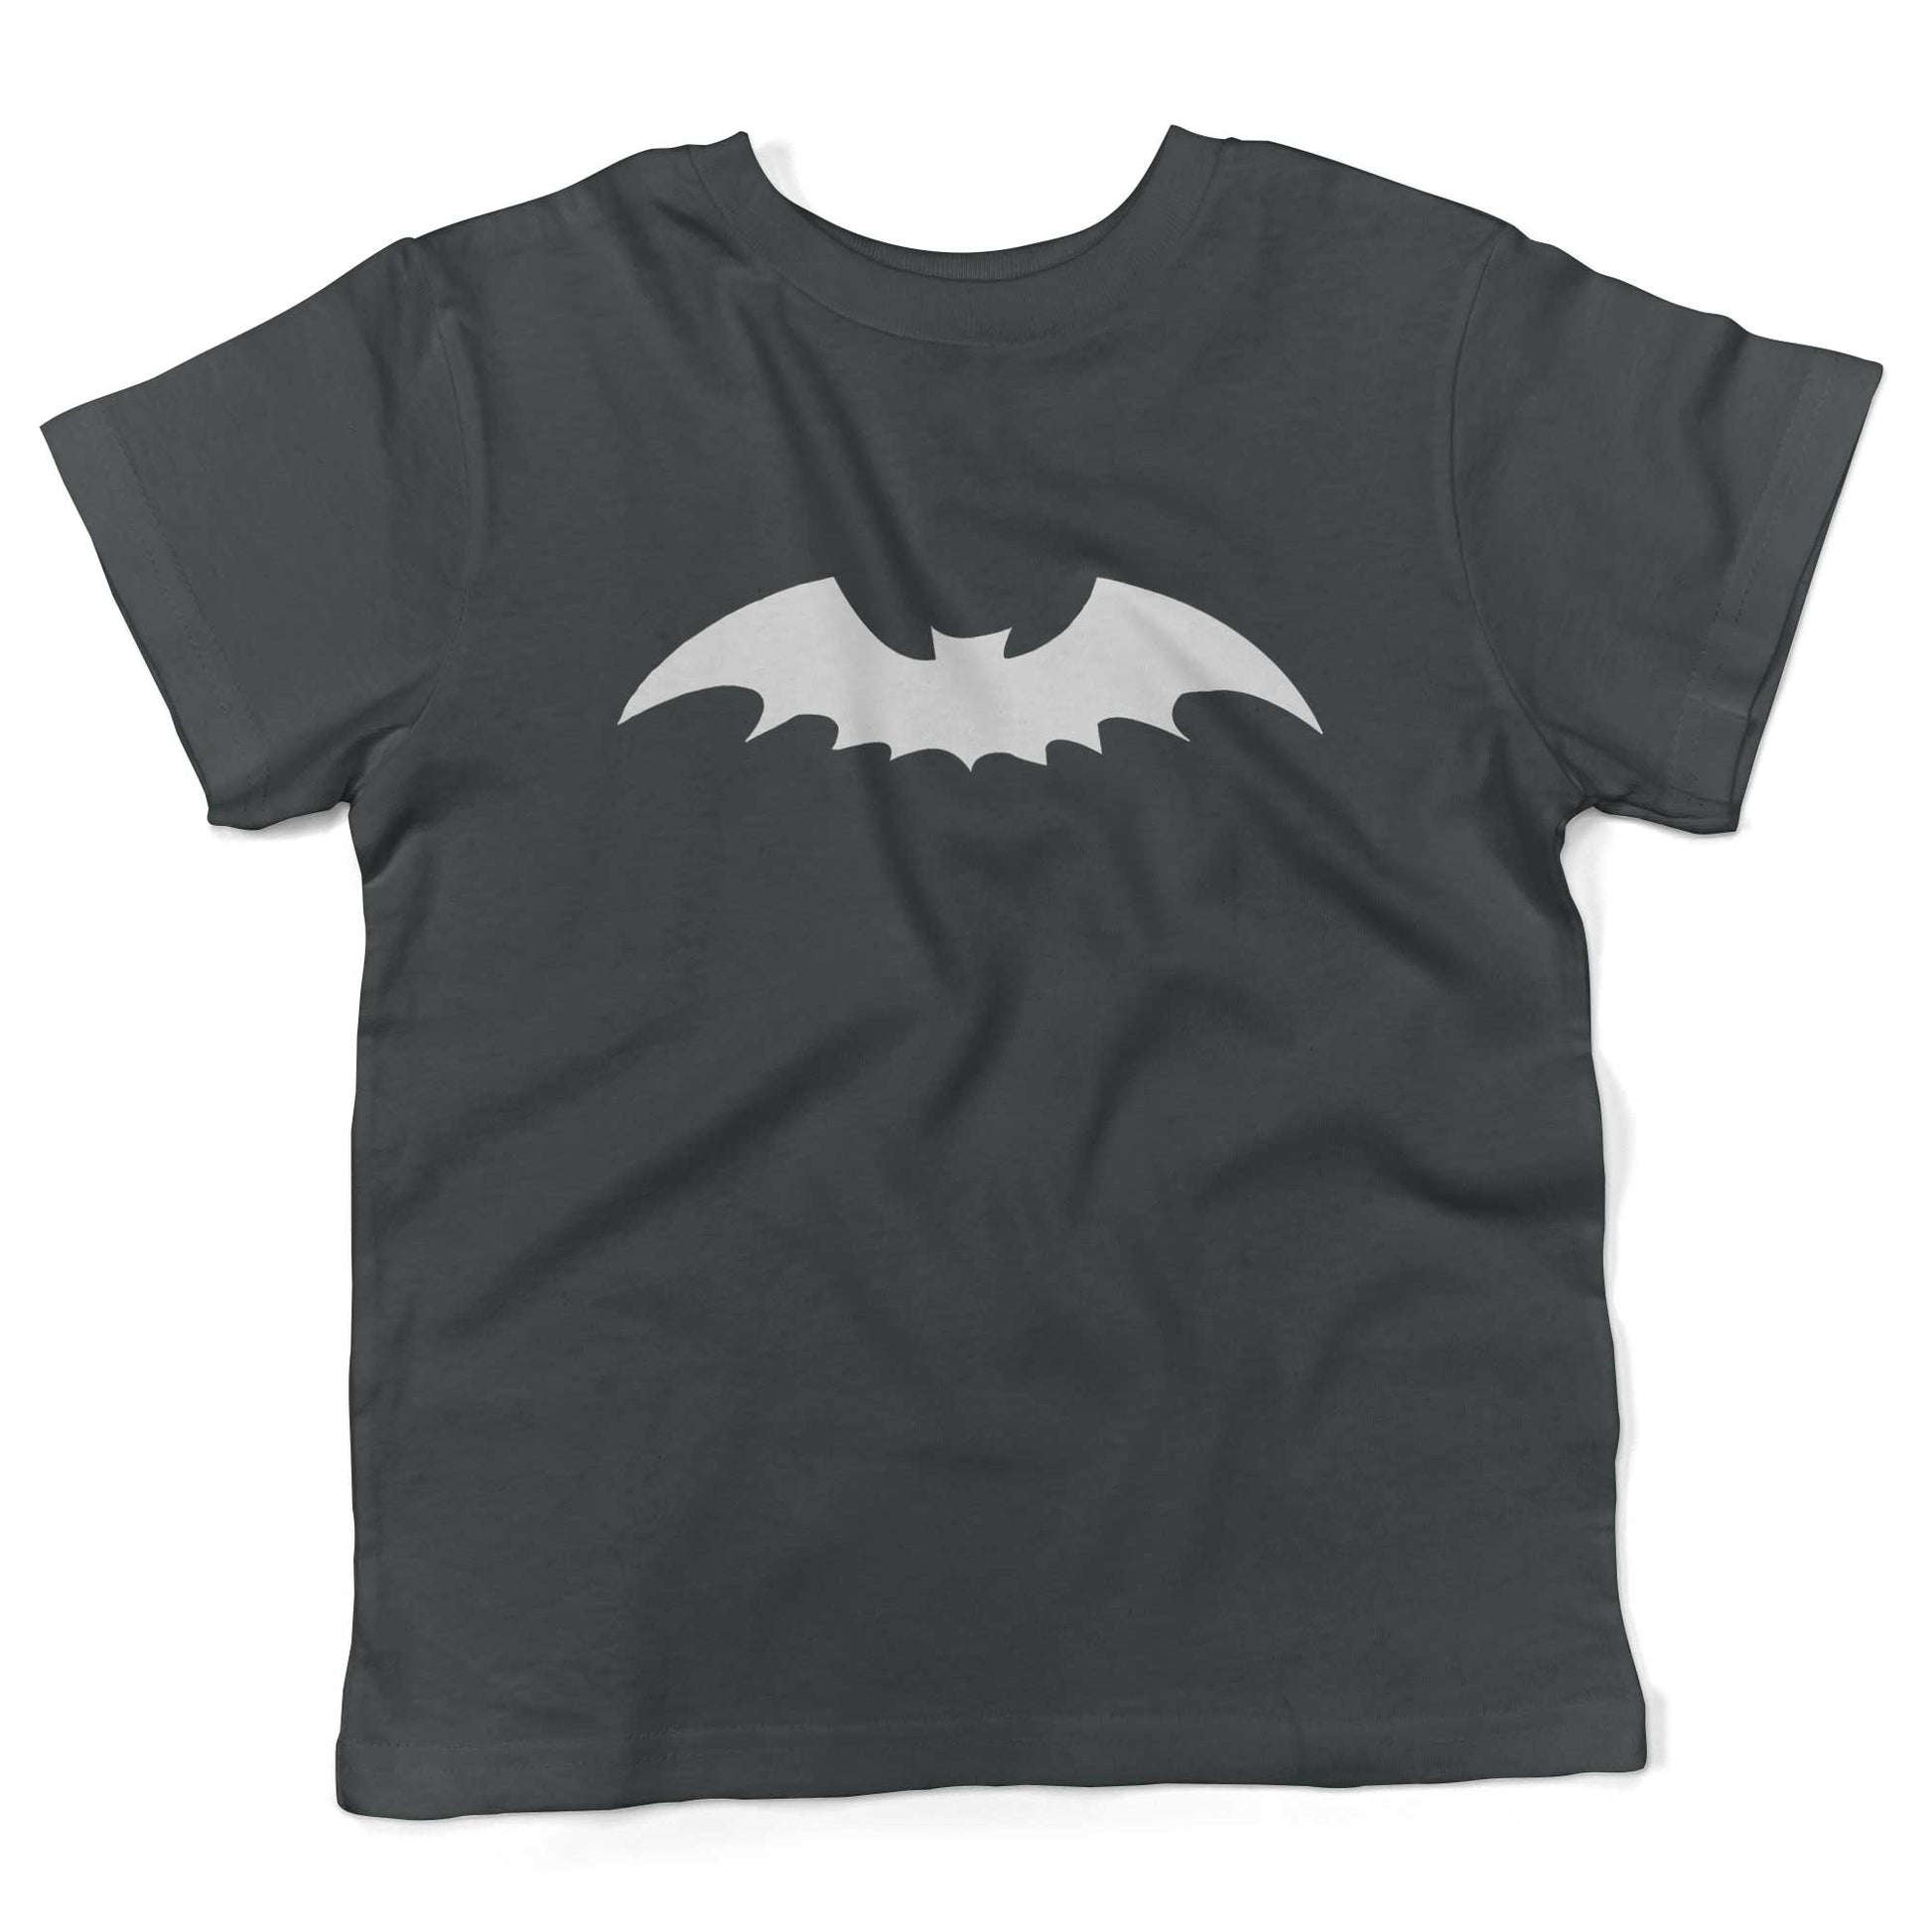 Gothic Bat Toddler Shirt-Asphalt-2T